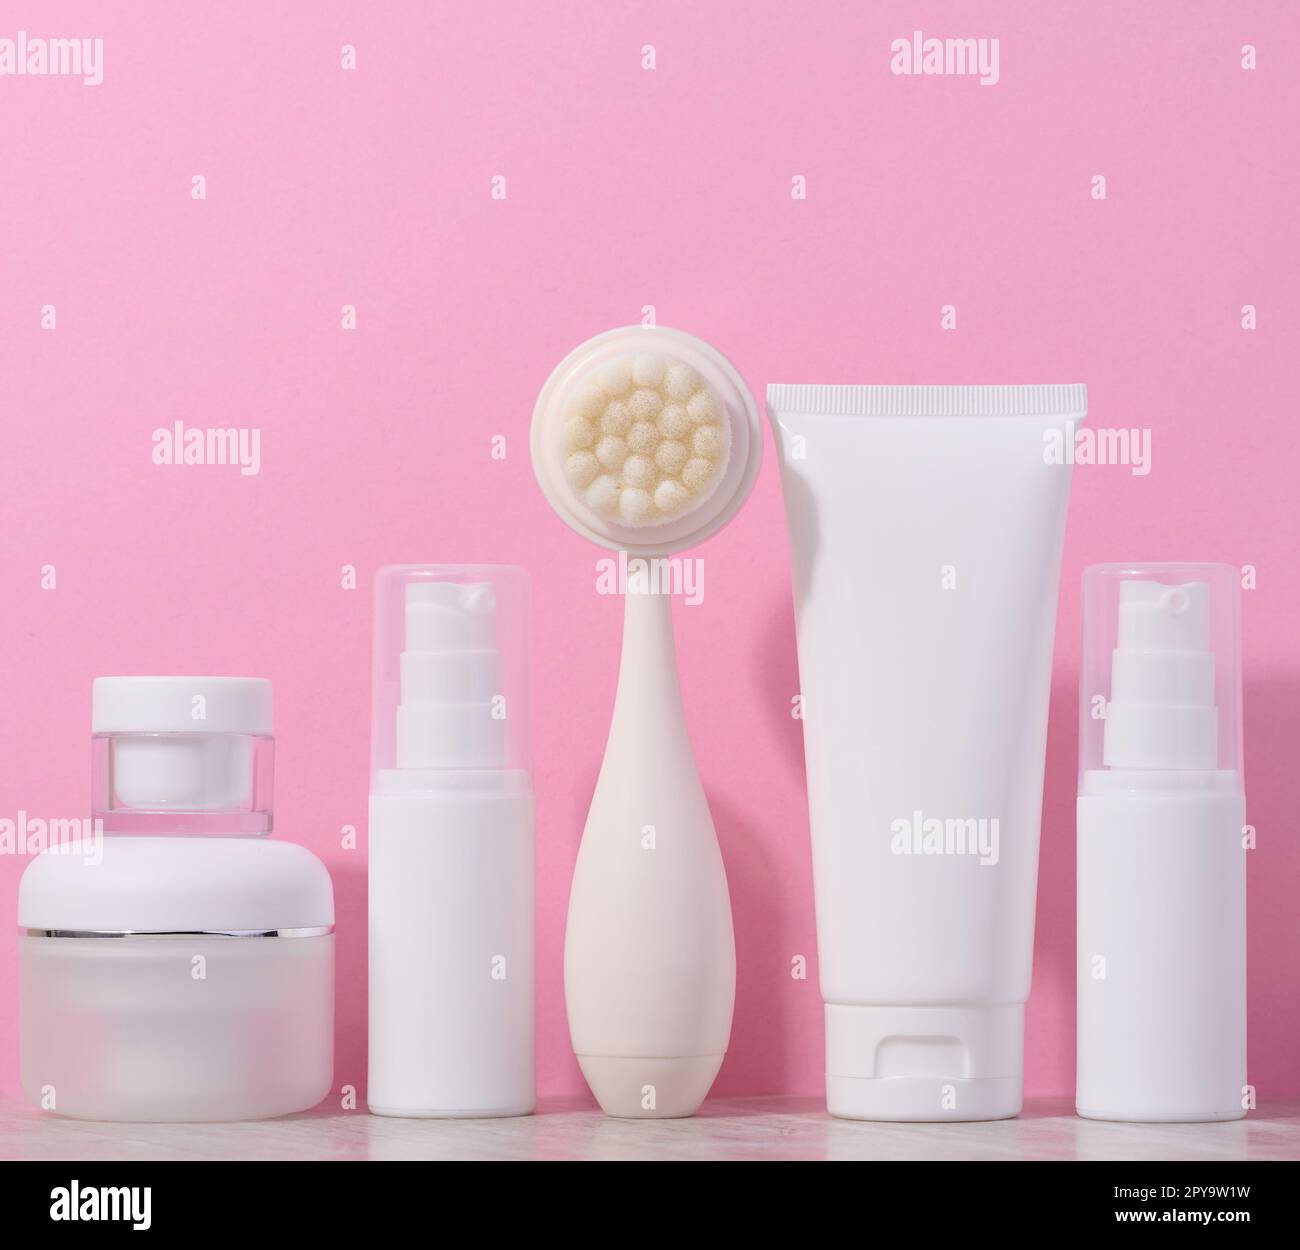 Tubes en plastique blanc et pots de crème, et une brosse de massage pour le nettoyage du visage sur fond rose, des articles pour les procédures cosmétiques Banque D'Images